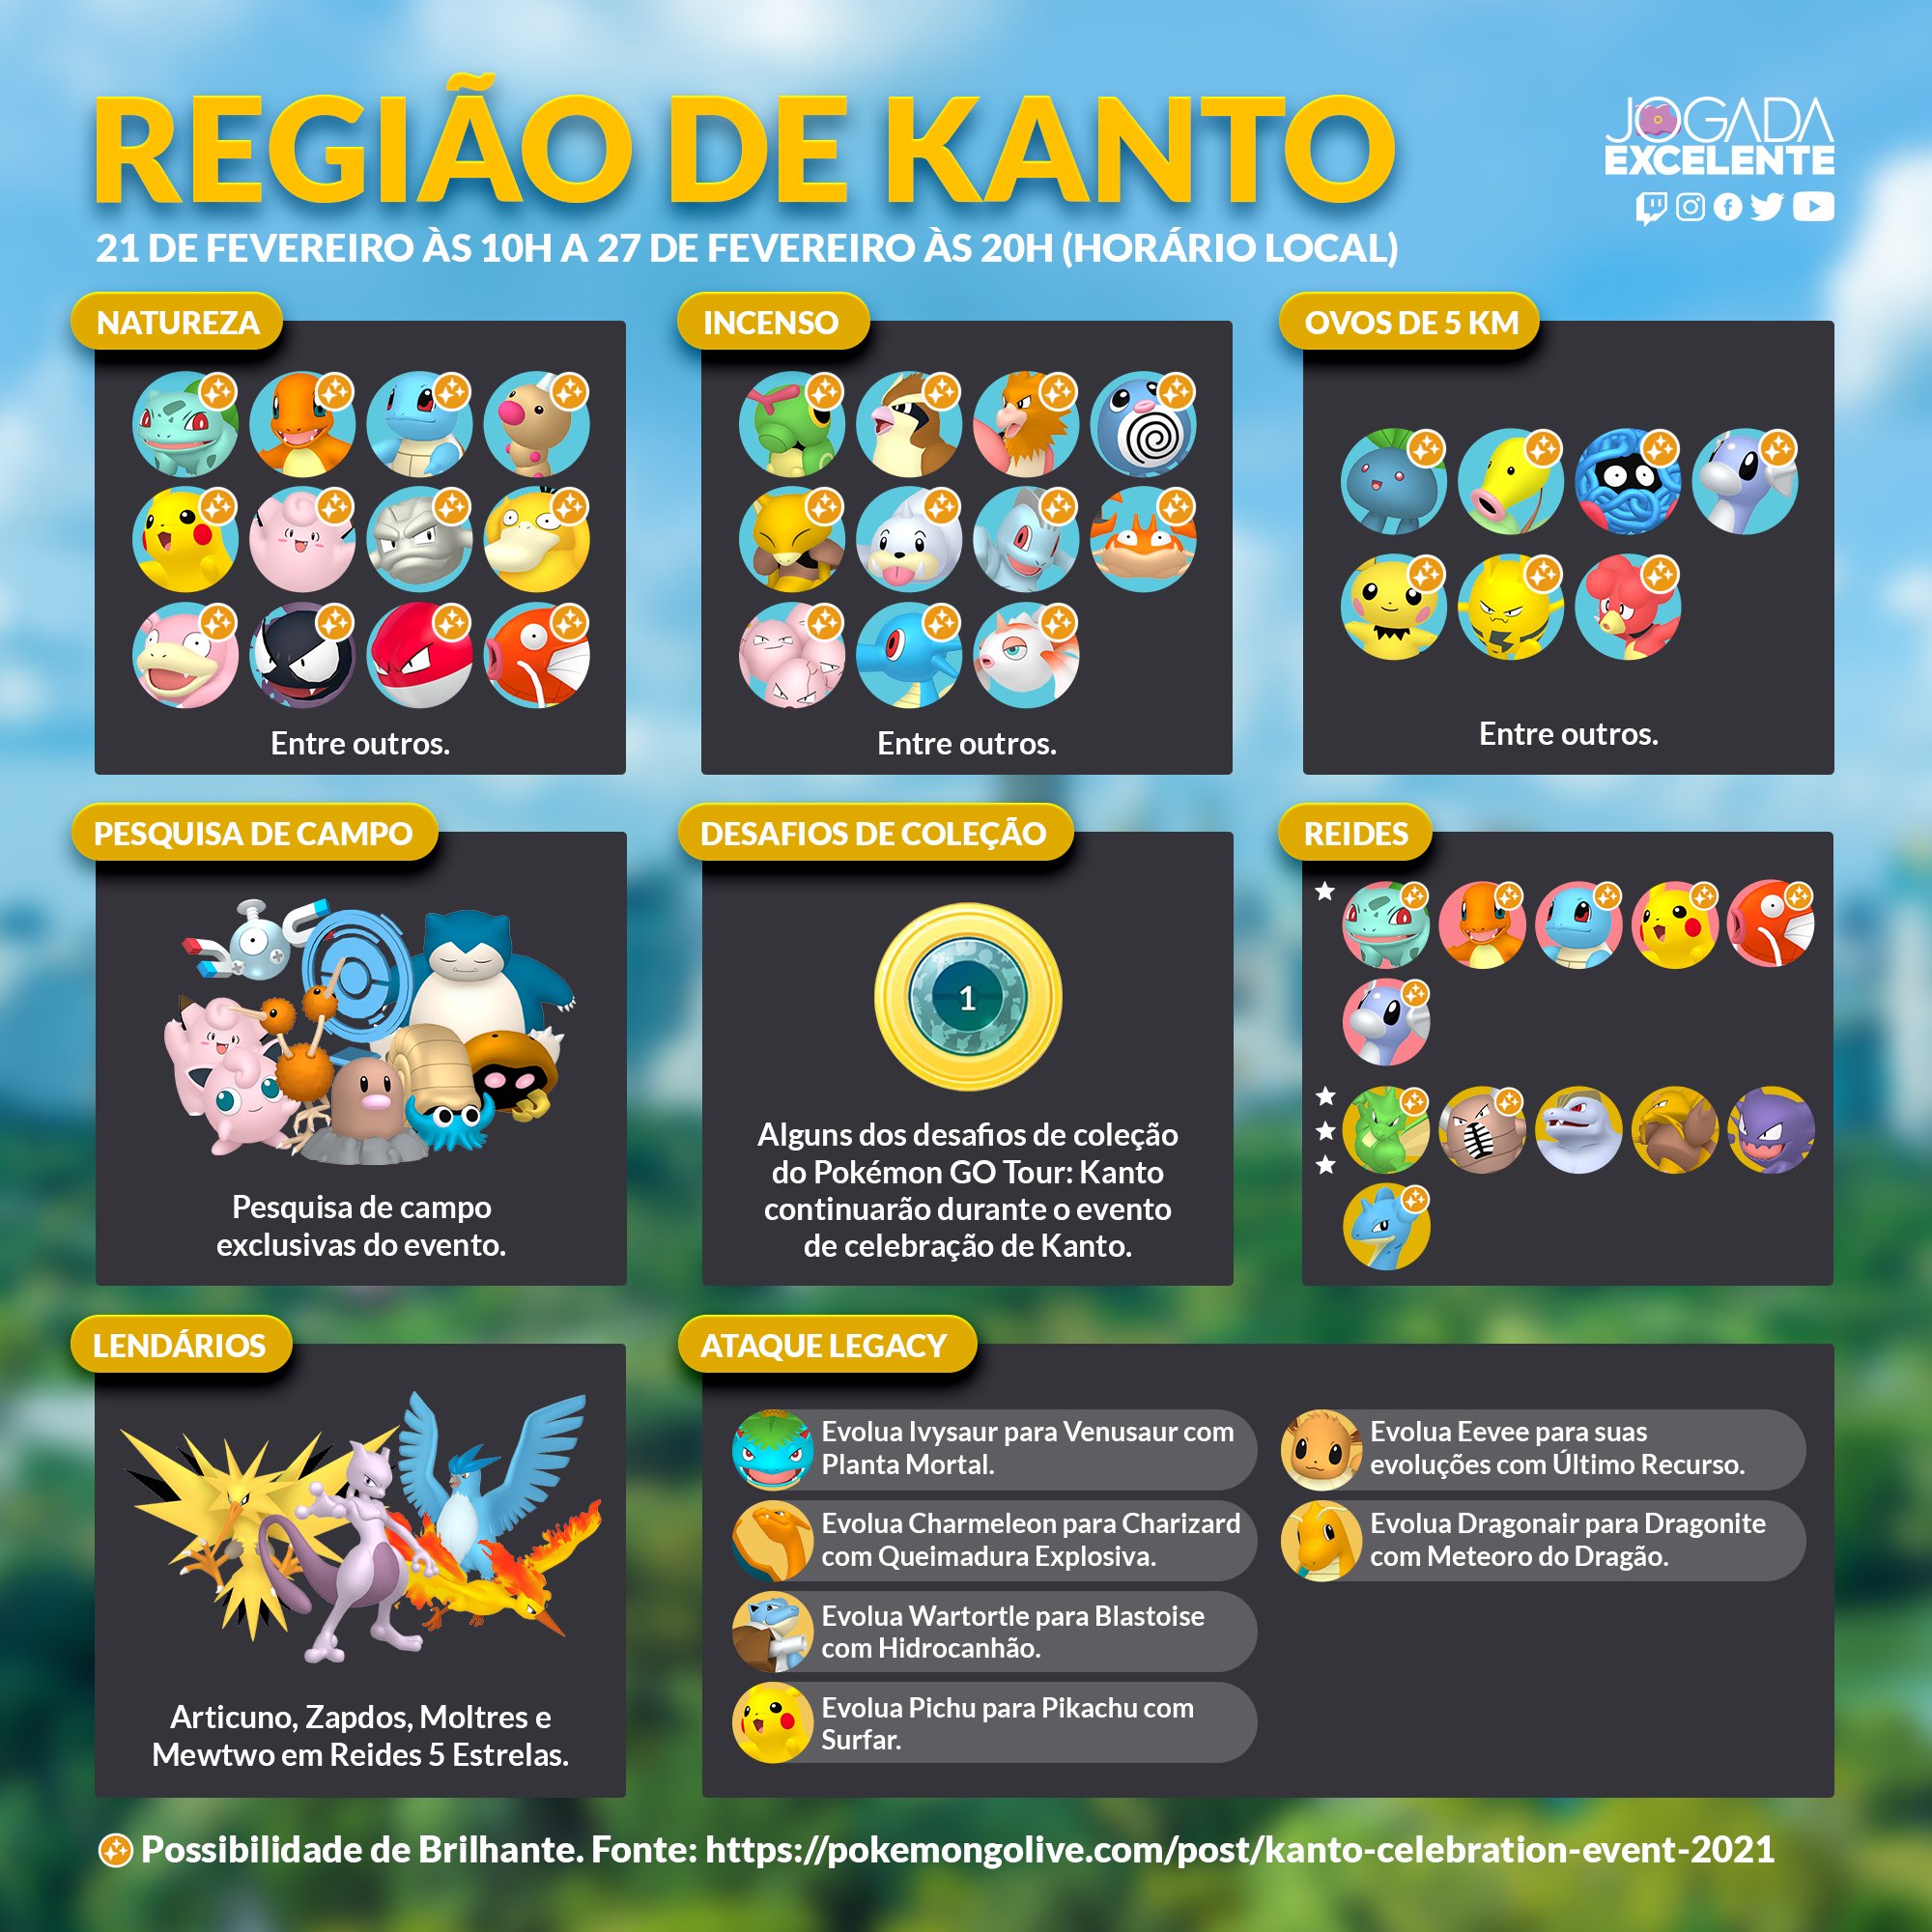 Pokémon GO: como pegar Moltres nas reides; melhores ataques e